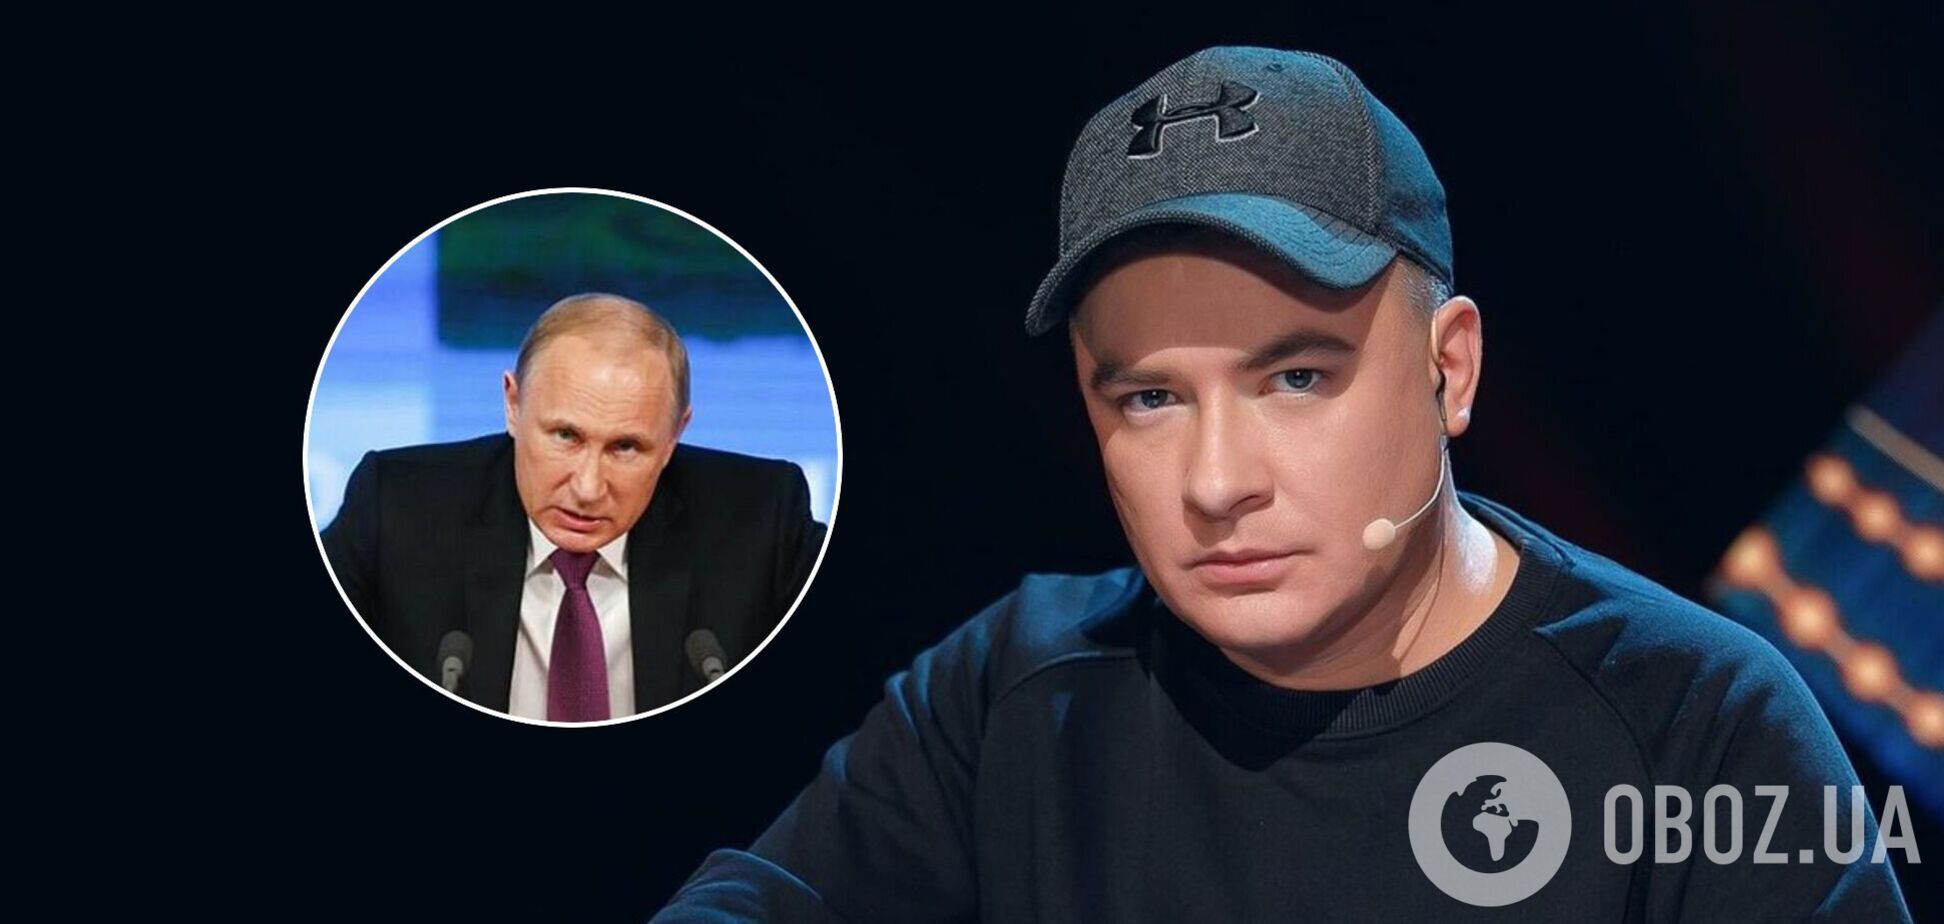 Данилко – о знакомстве с Путиным: он был деликатен, внимателен, как будто вербовал... Не такой, как это 'исчадие ада' на экране